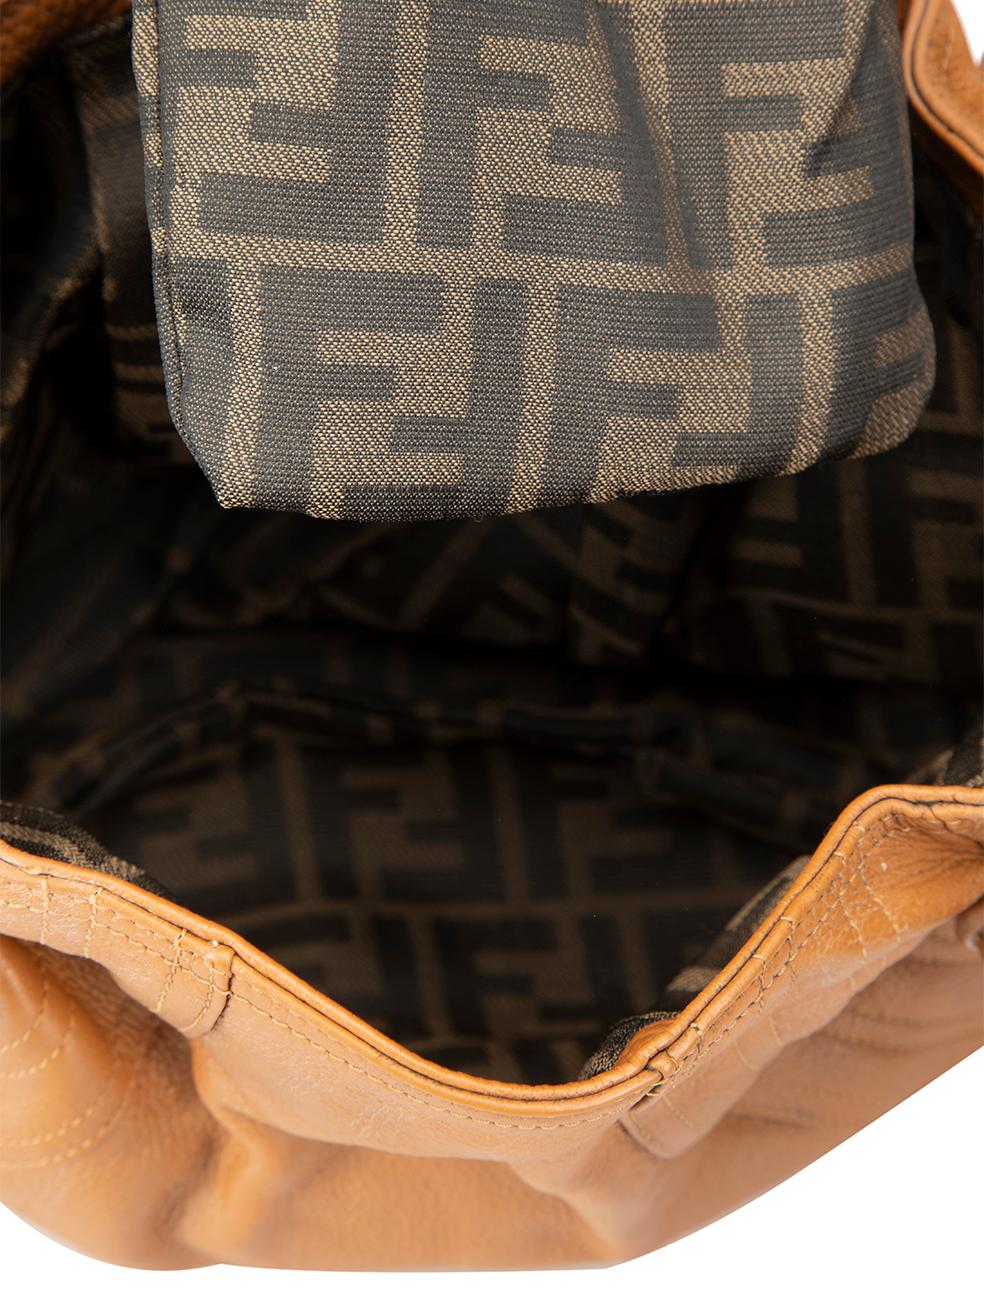 Fendi Women's Camel Leather Spy Hobo Bag 2